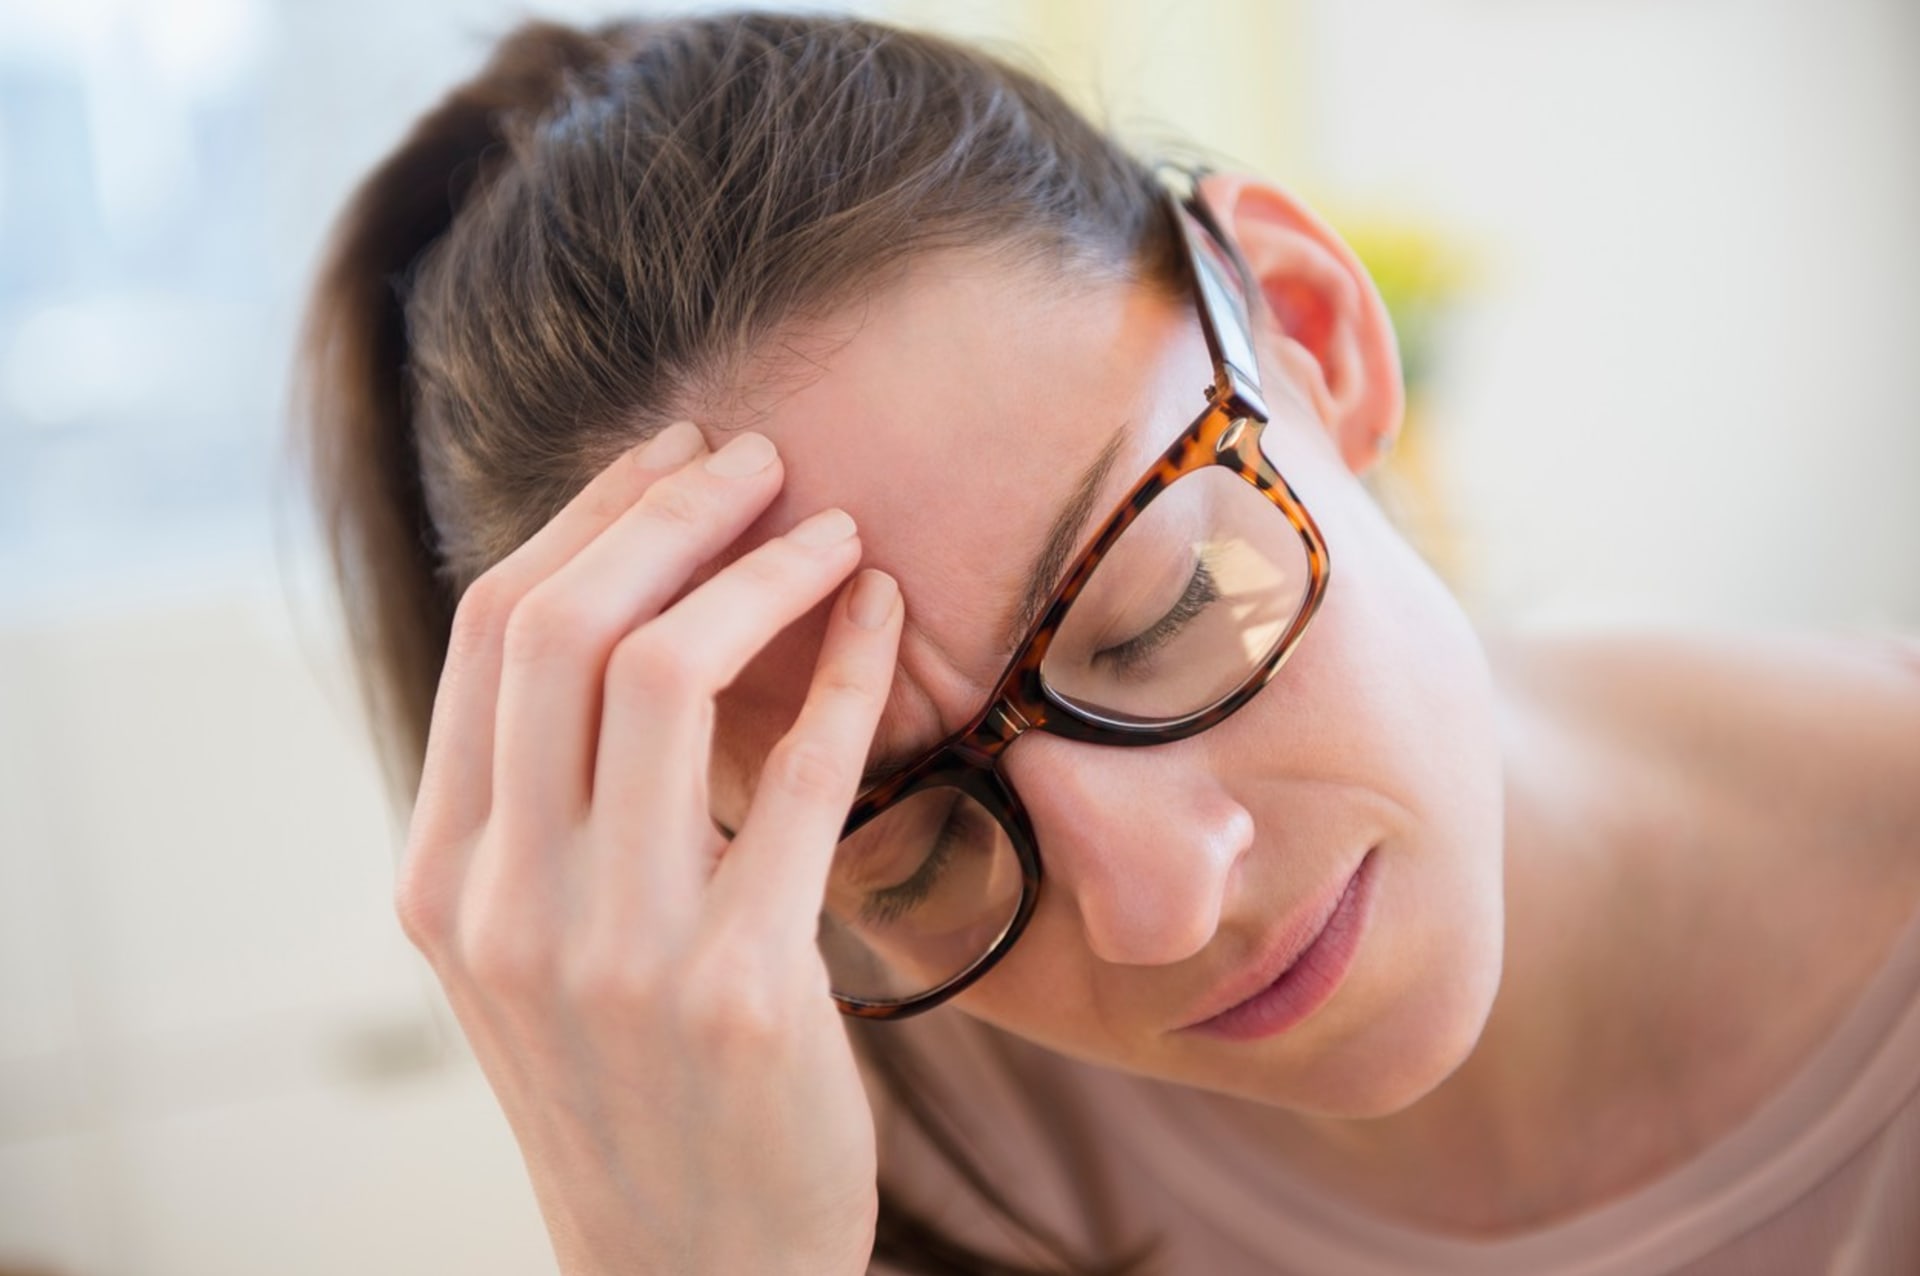 Mezi časté postcovidové příznaky patří bolest hlavy a únava (ilustrační foto).